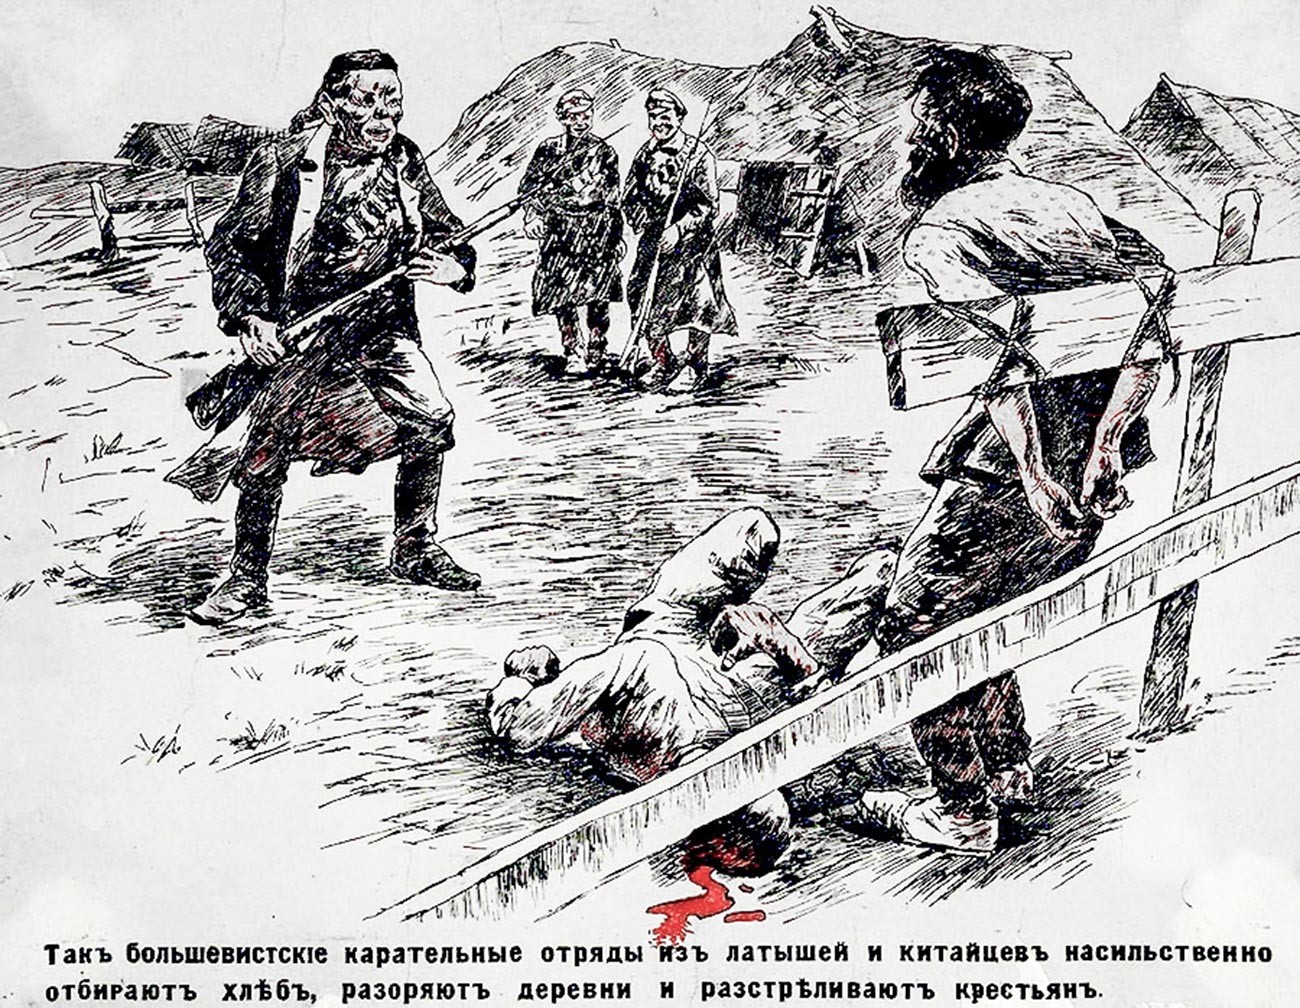 Propagandaplakat der weißen Bewegung, das rote chinesische und lettische Soldaten darstellt.